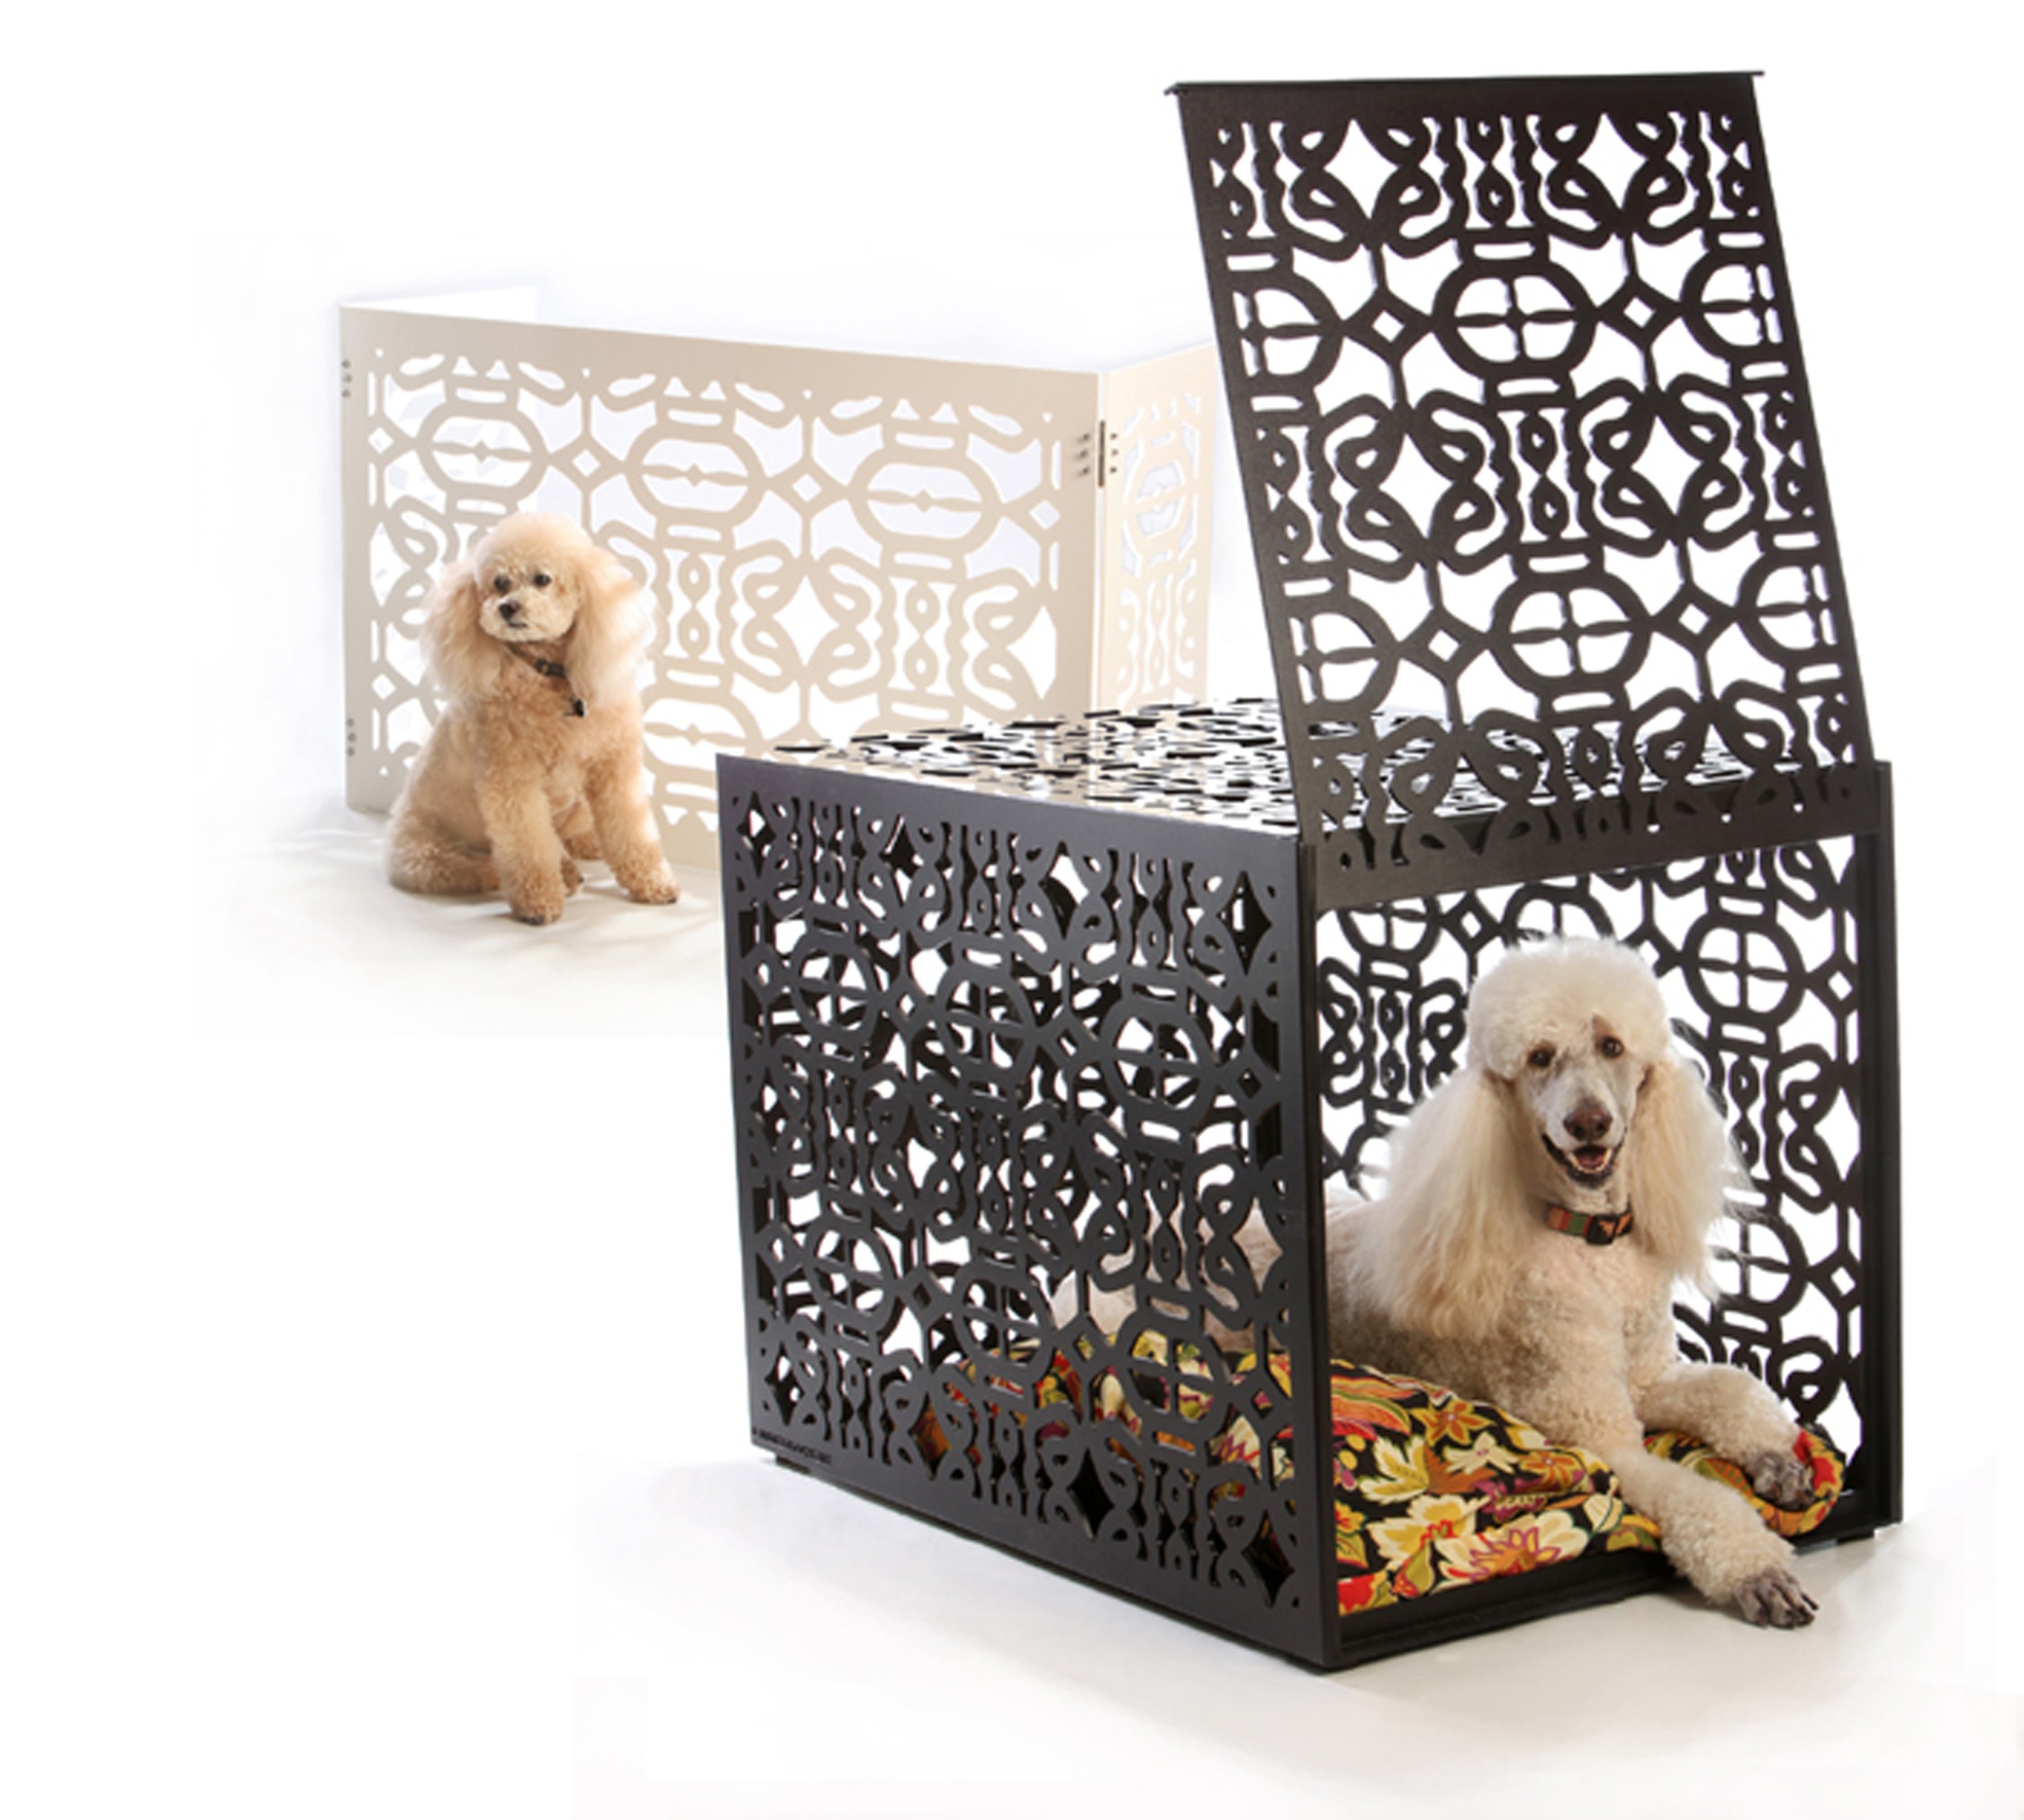 Designer dog cages